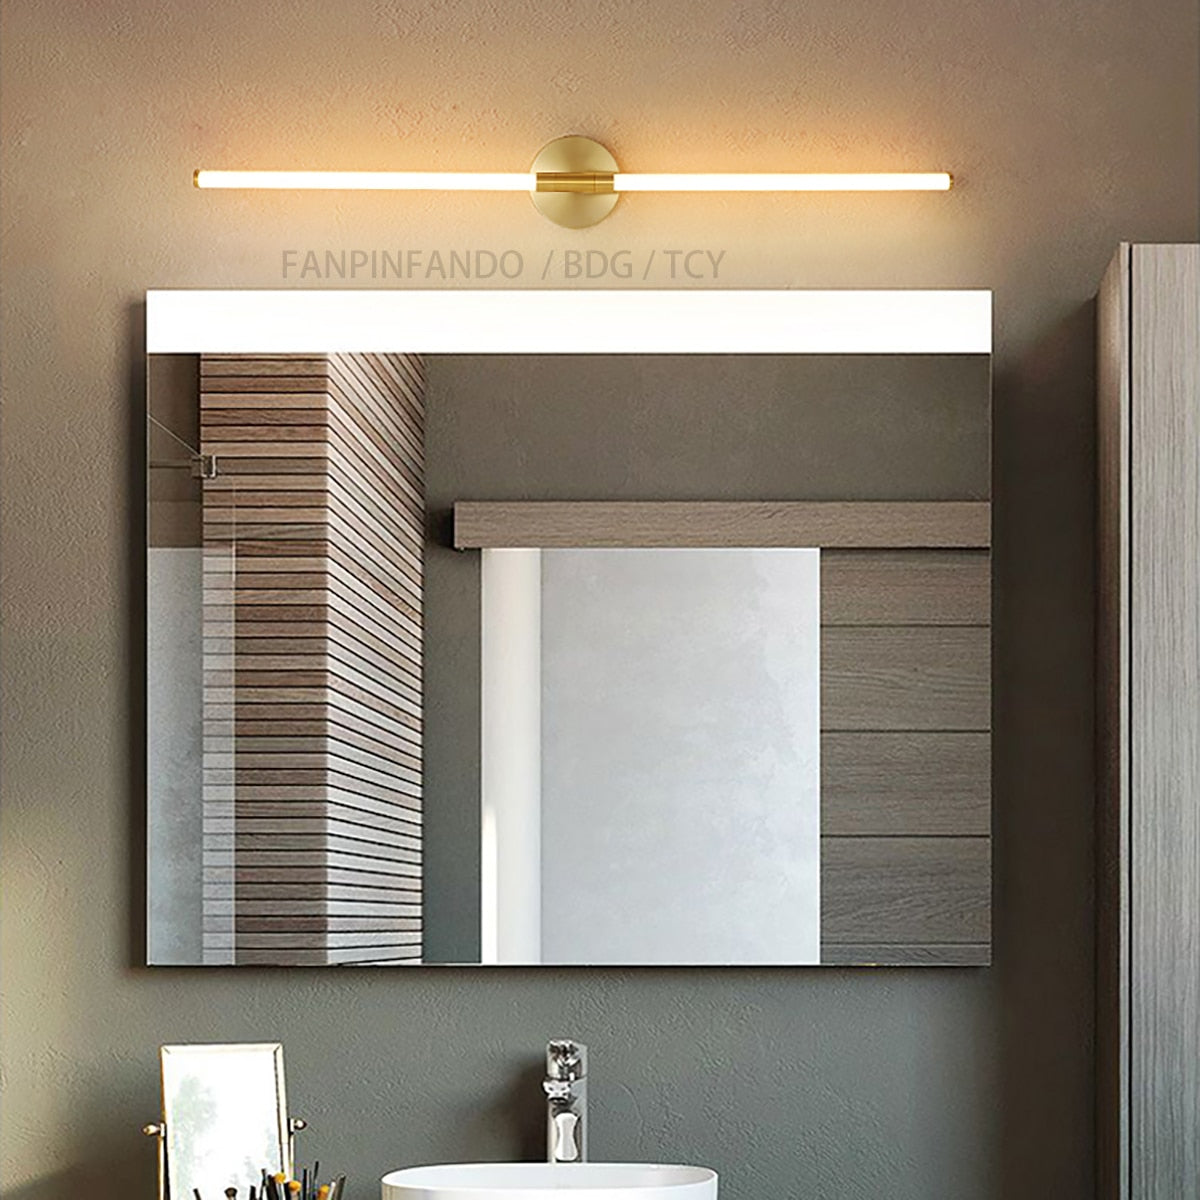 LODOOO Black Bathroom Mirror Wall Light